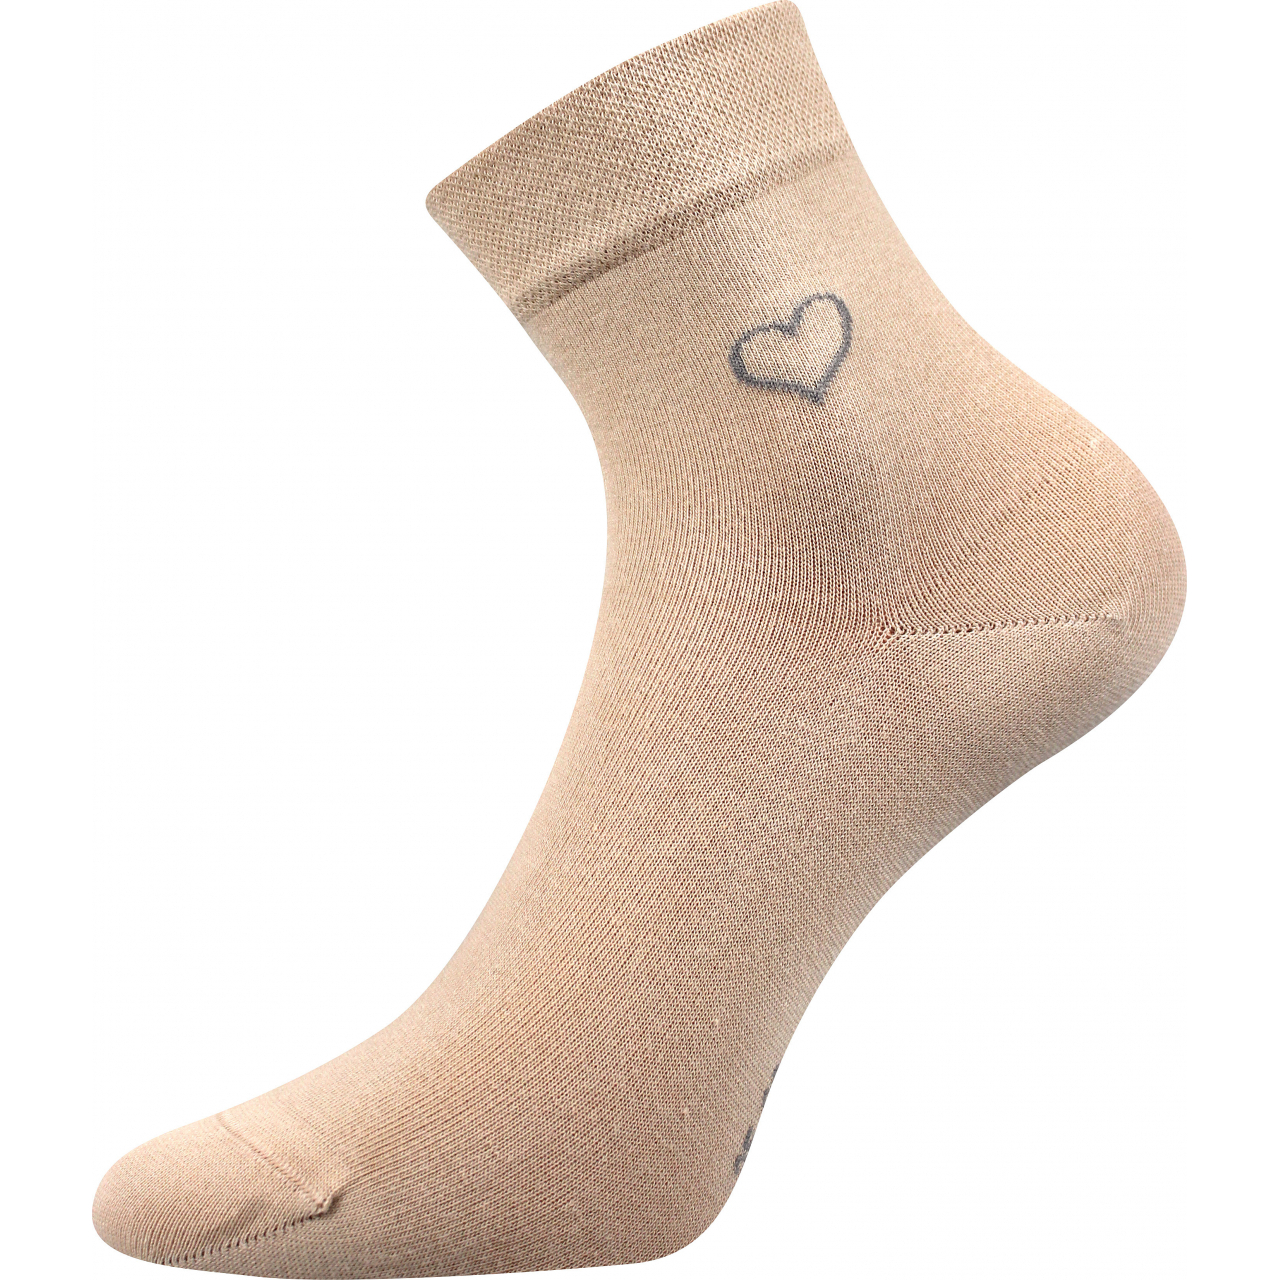 Ponožky elegantní dámské Lonka Filiona - béžové, 39-42